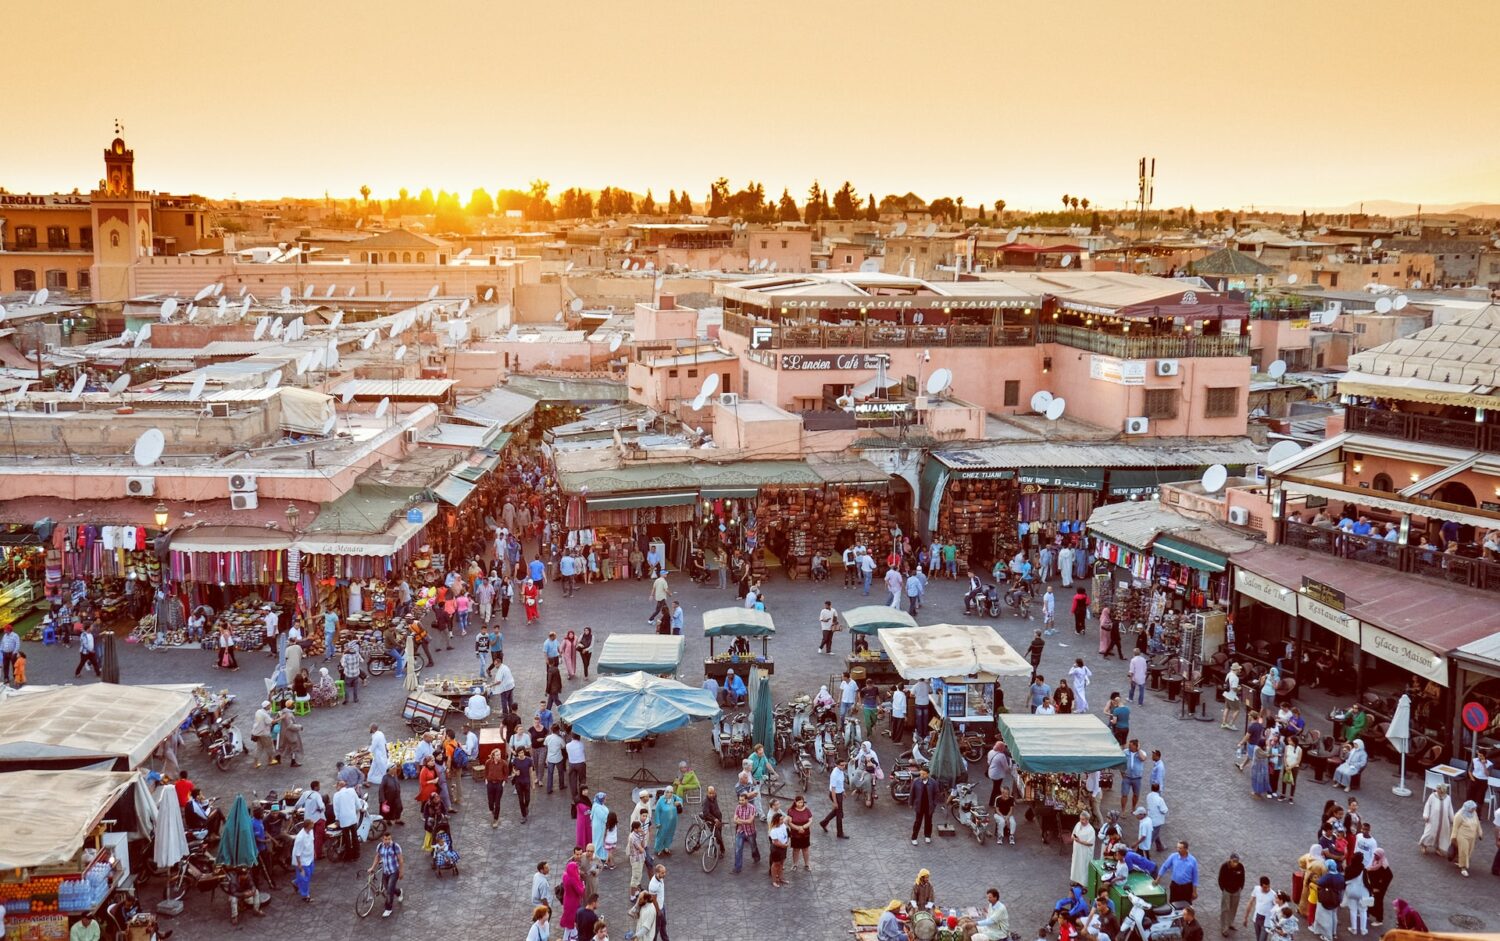 Pessoas caminhando na feira de Marrakesh. - Foto: CALIN STAN via Unsplash